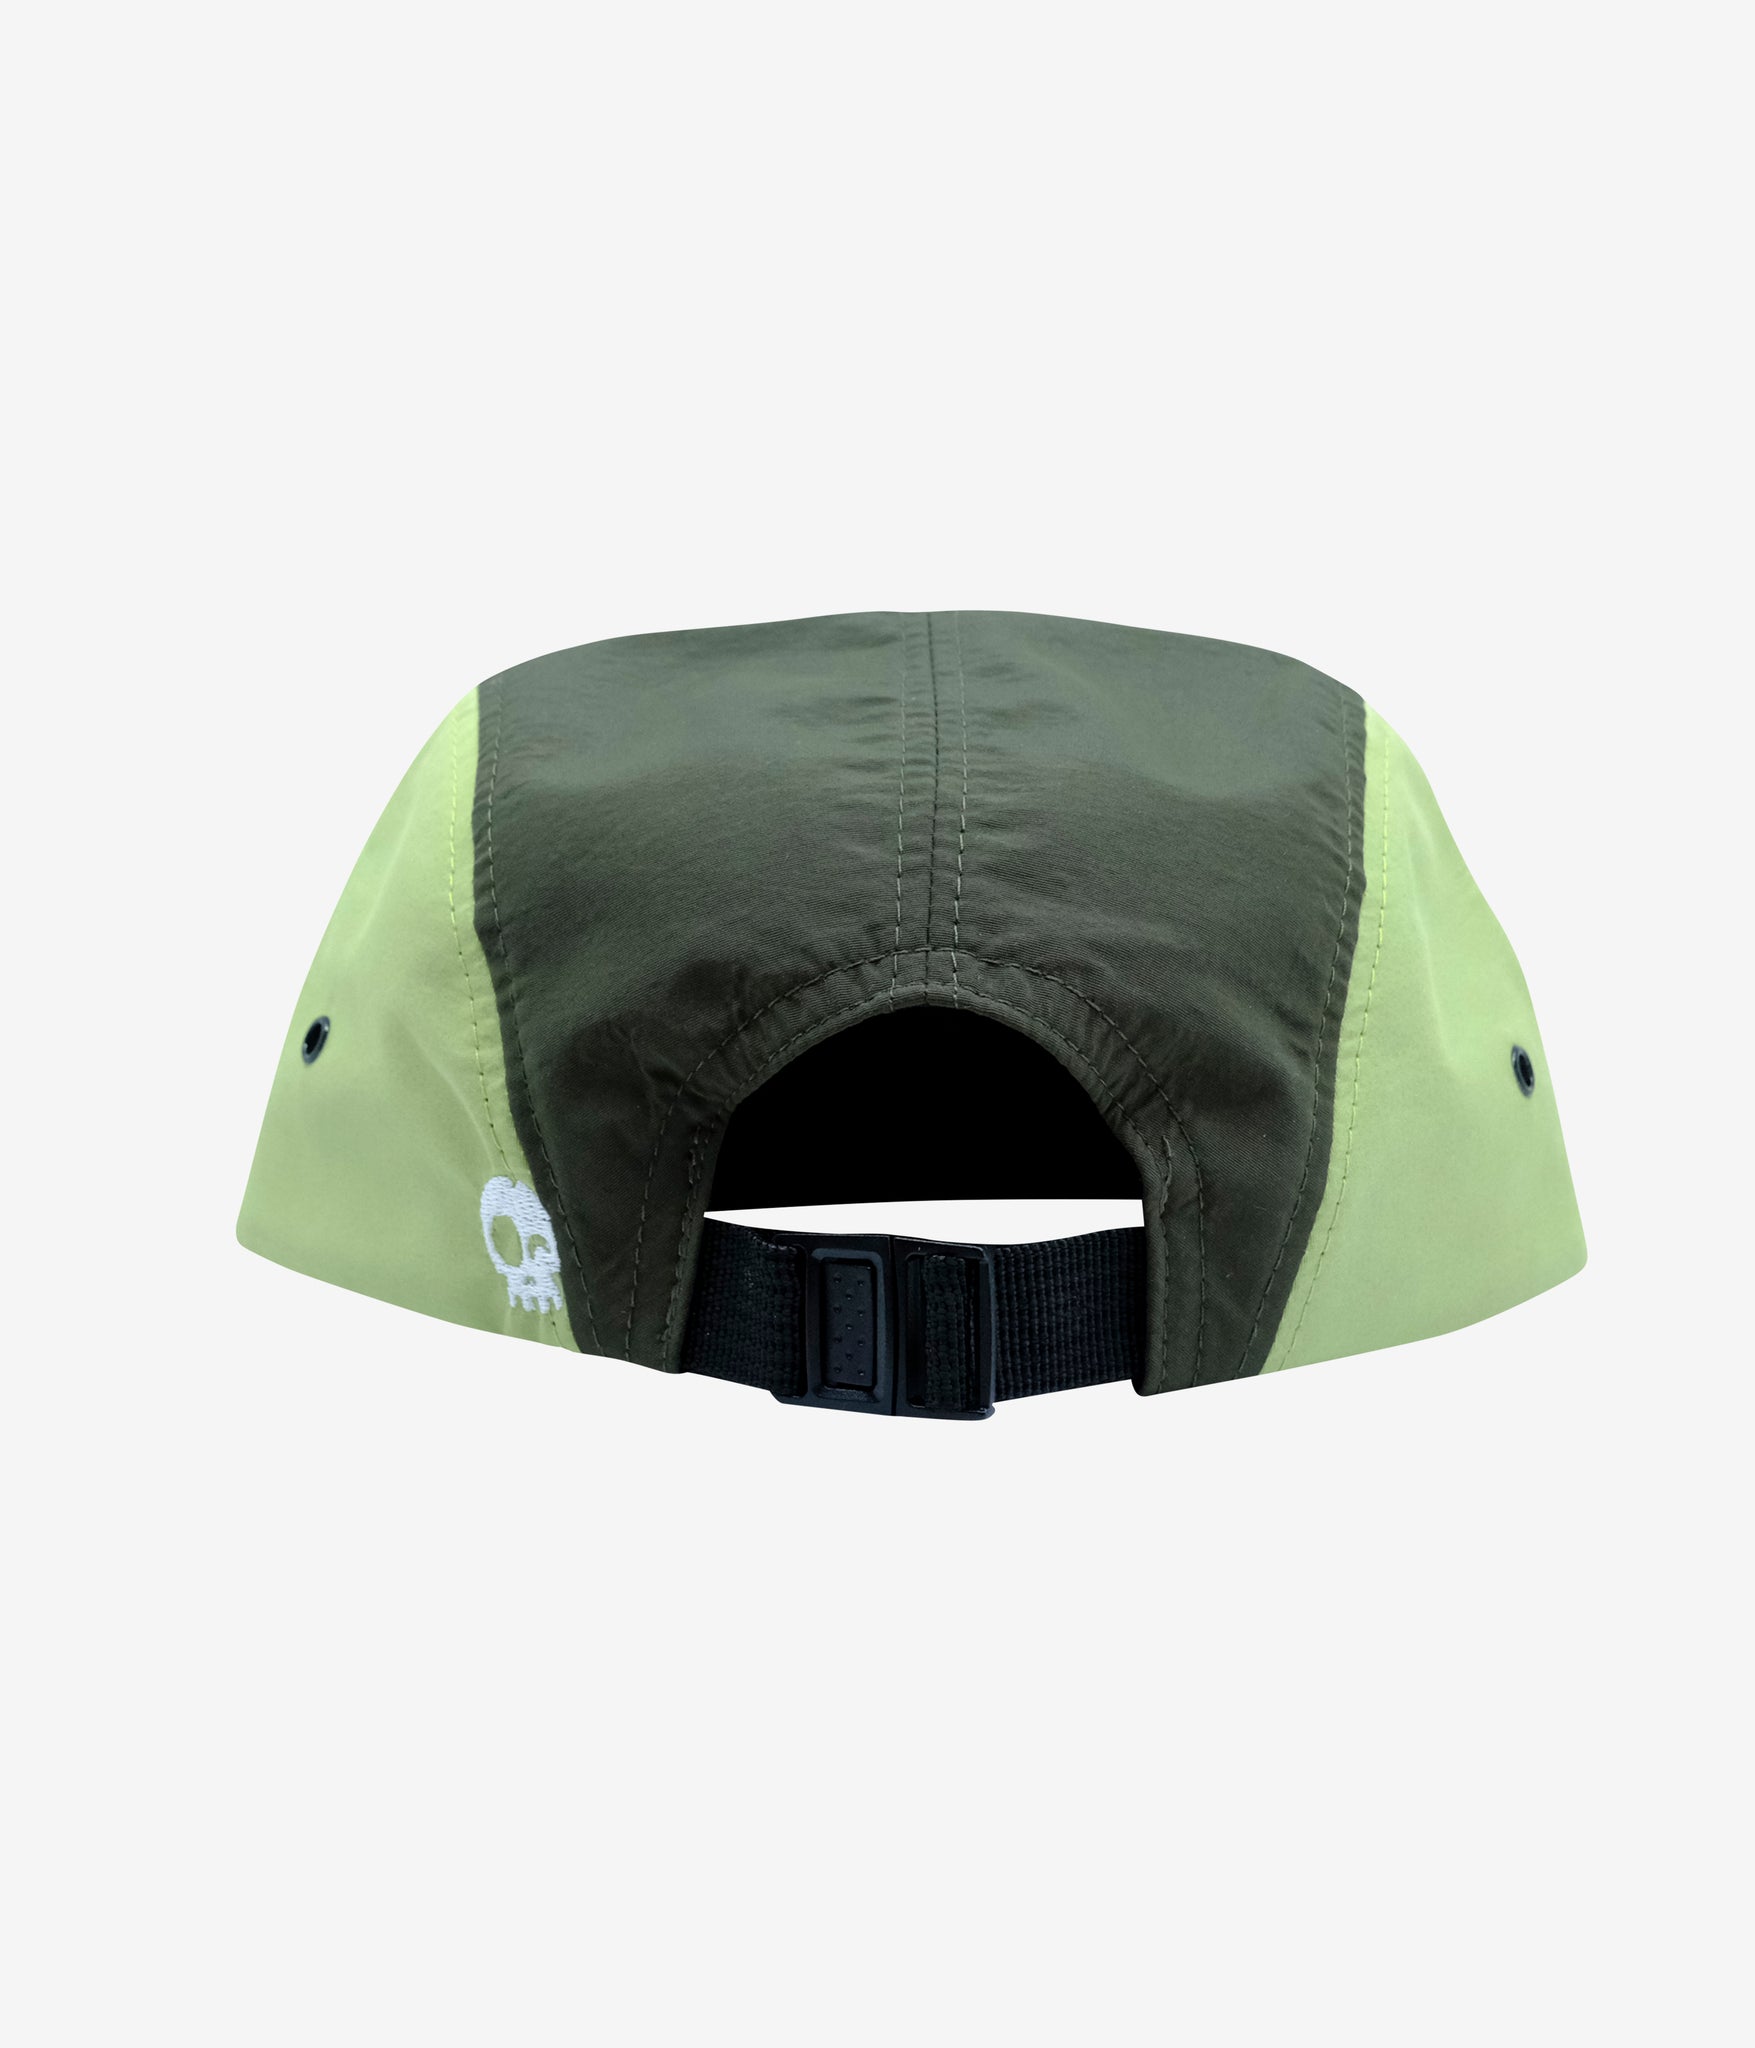 Runner Foamy Green 5 Panel Hat